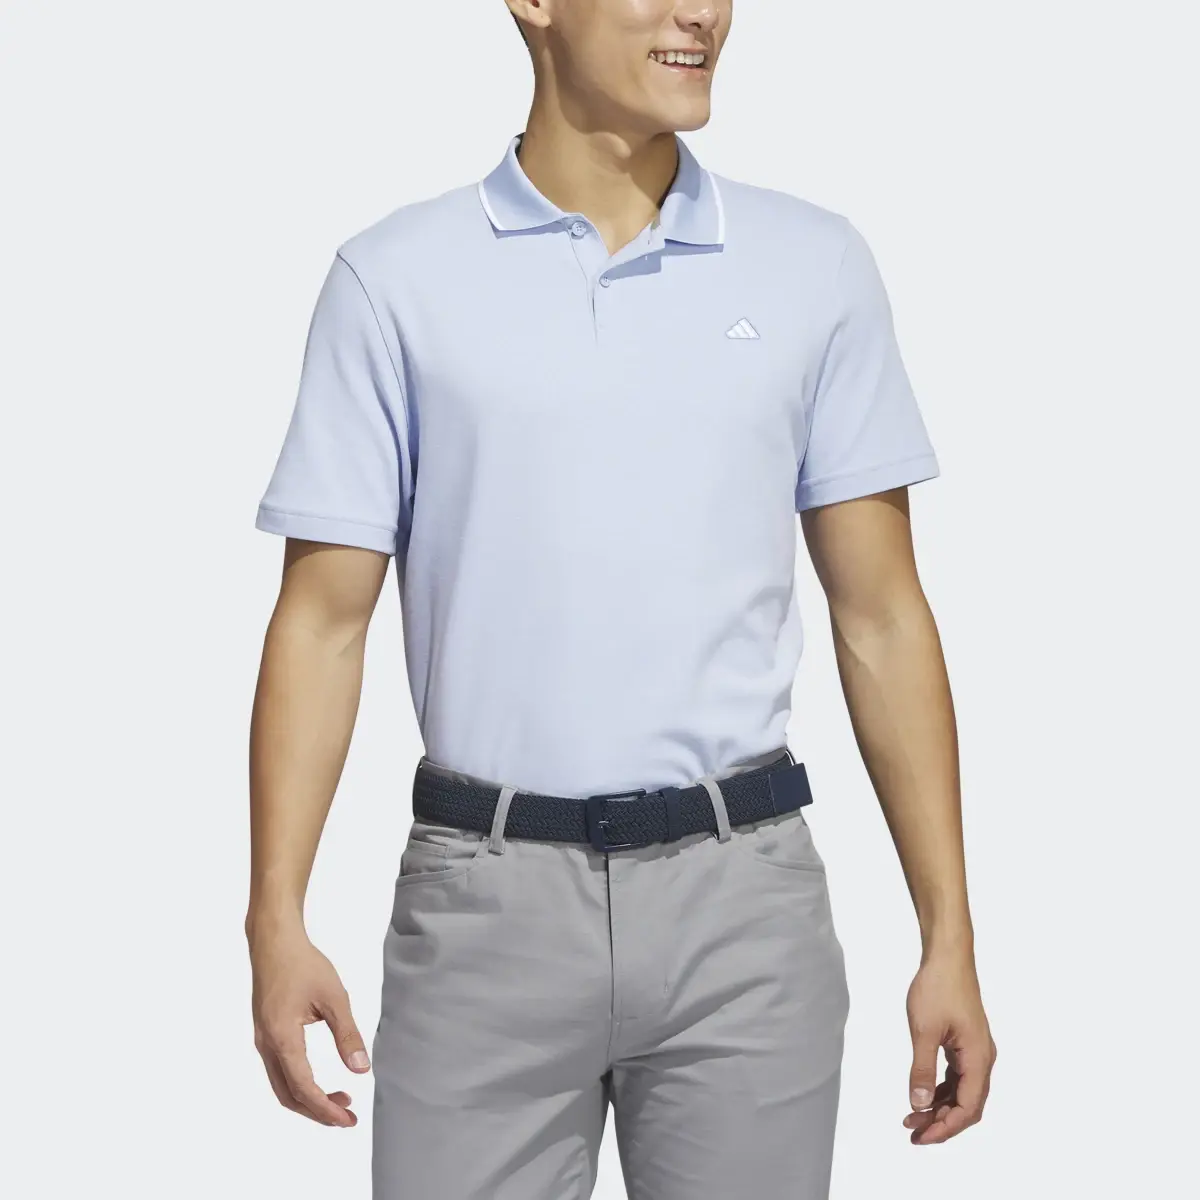 Adidas Go-To Piqué Golf Polo Shirt. 1